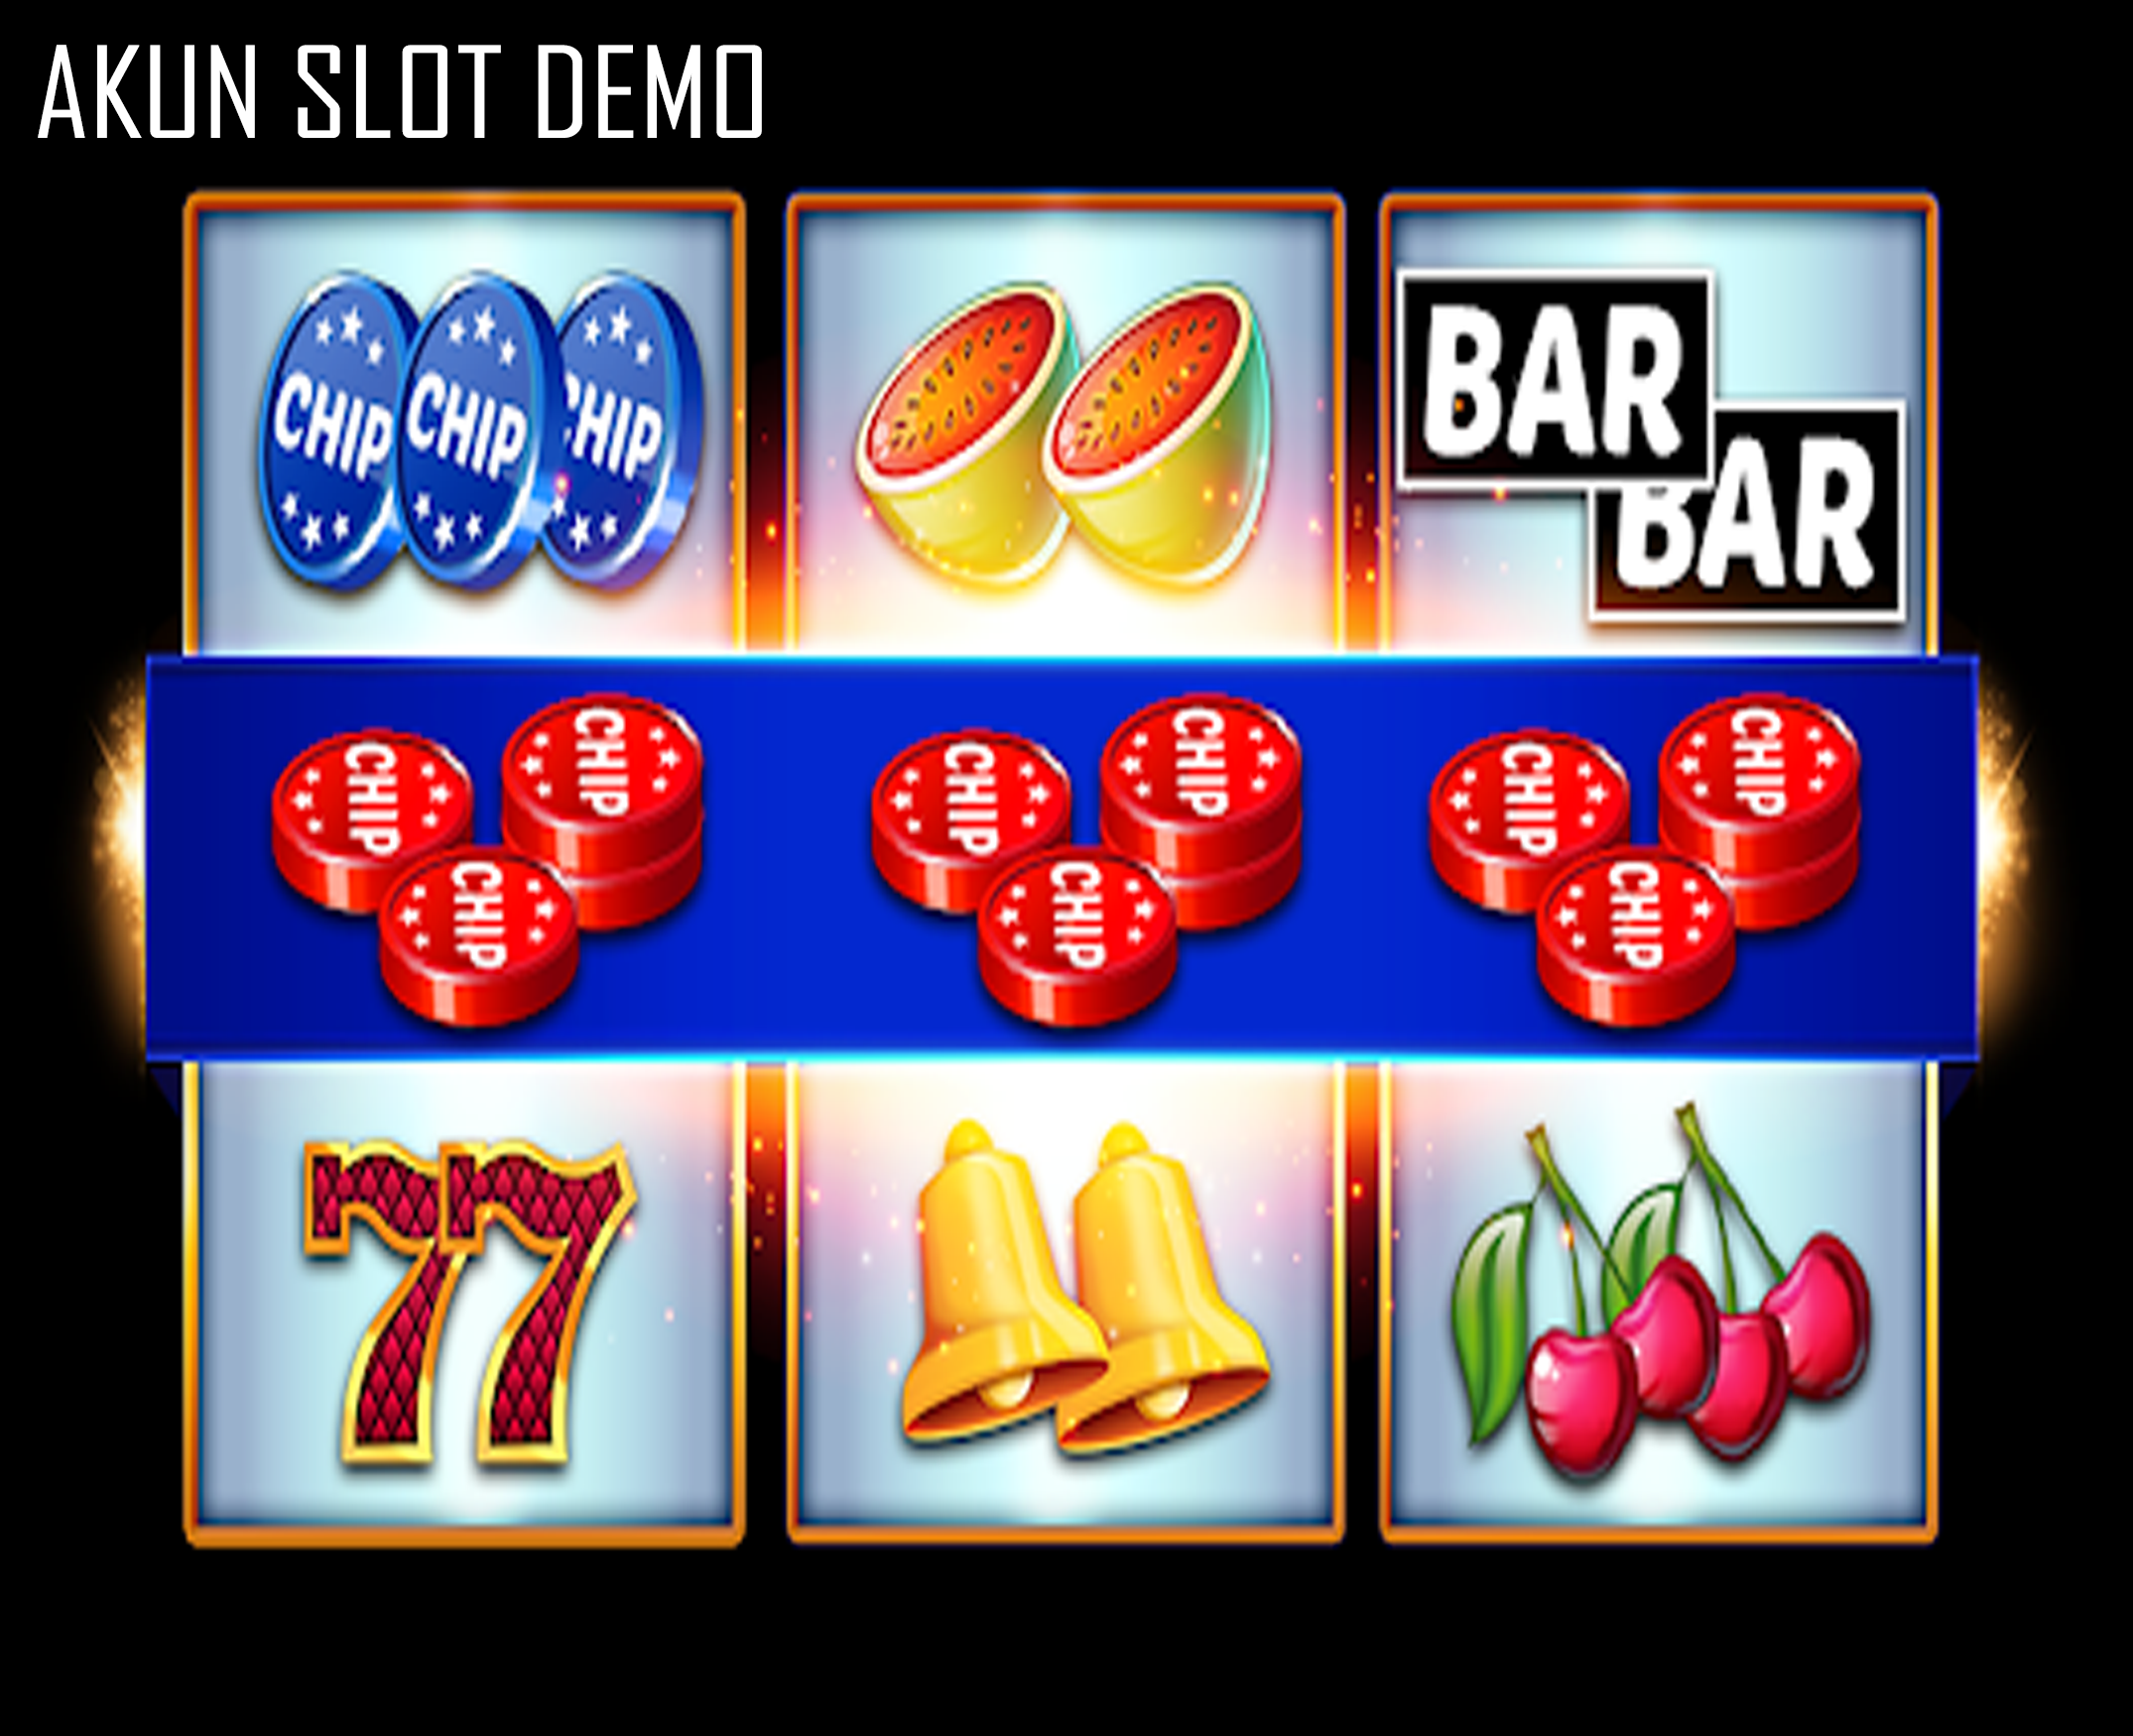 Akun Slot Demo: Pelajaran Penting Bagi Pemain